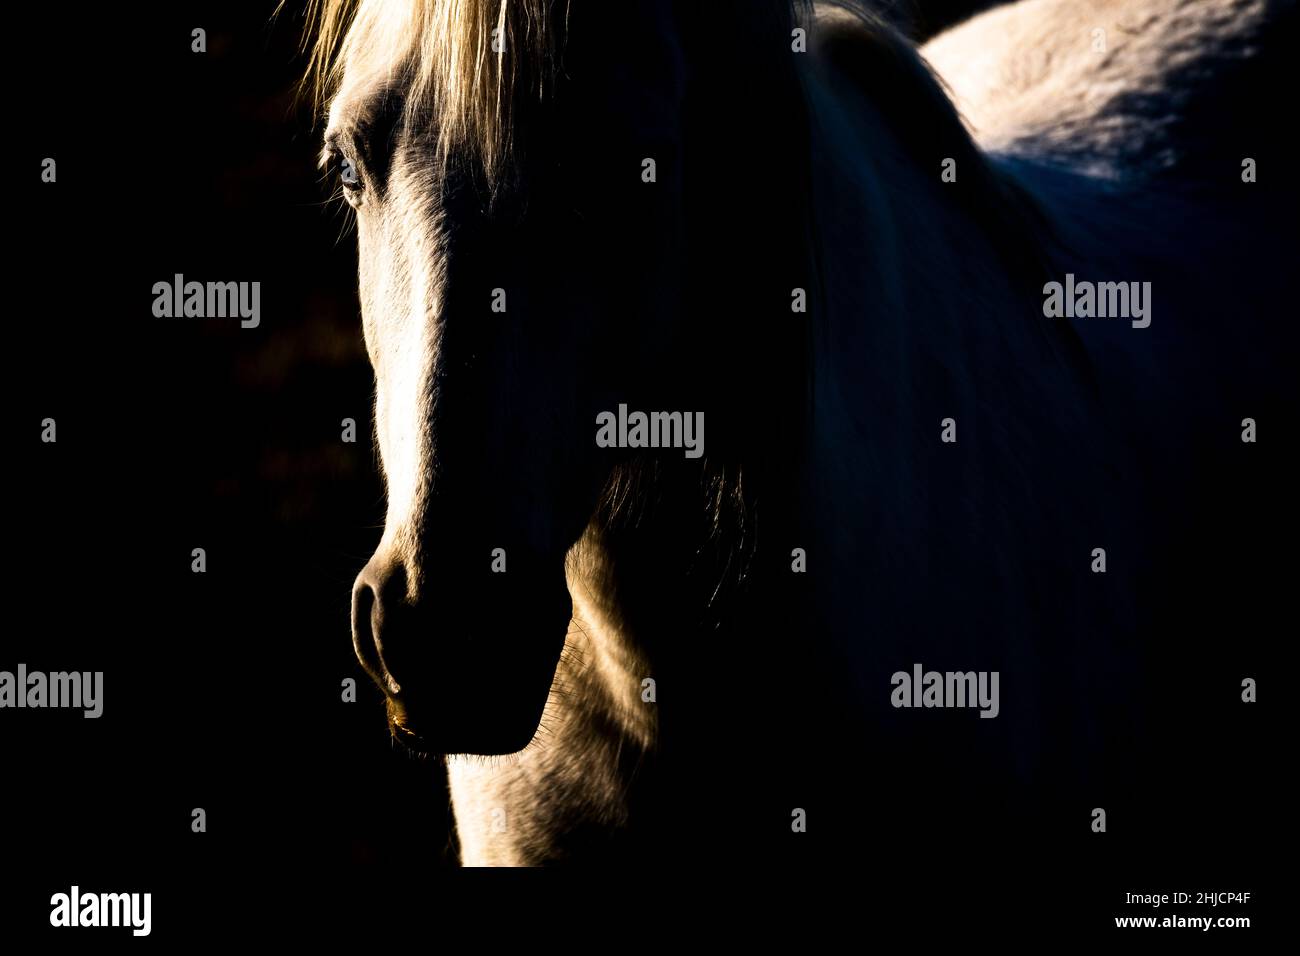 Horse (Equus ferus caballus), portrait. Stock Photo